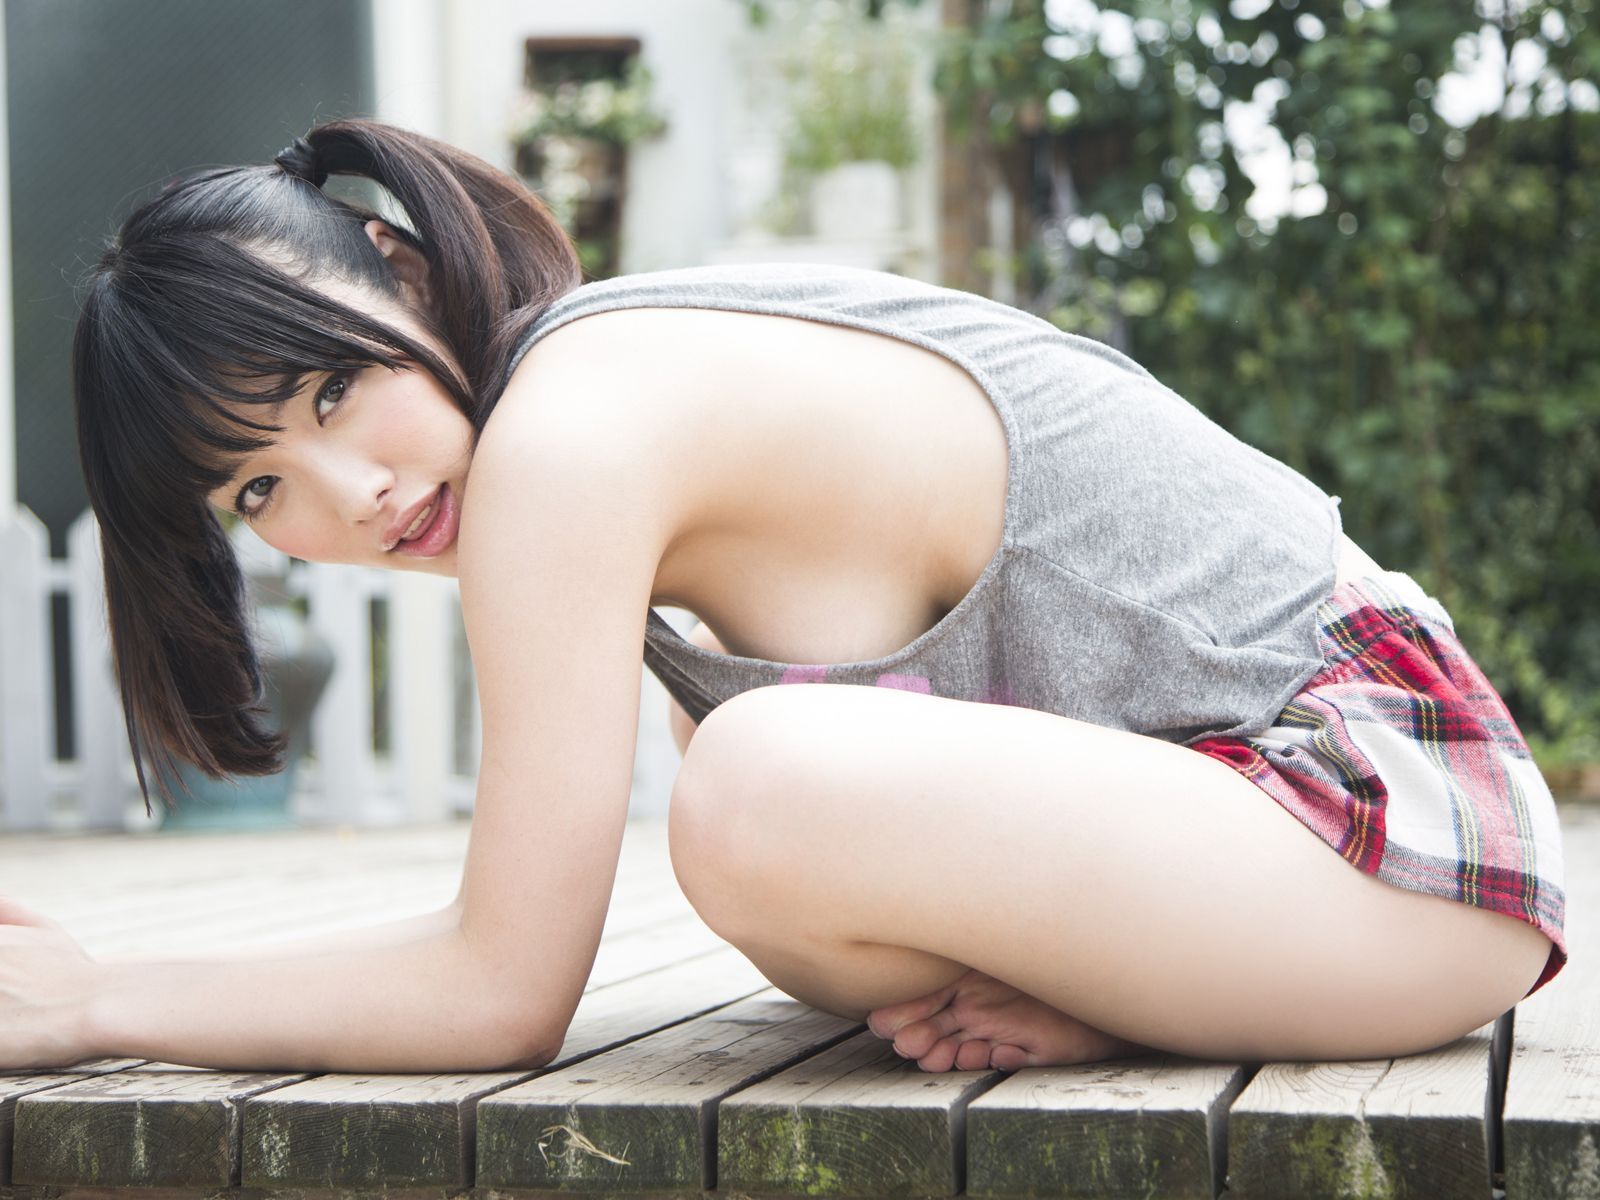 Keno Xingnan Japanese actress photo [Sabra] 2012.10.25 cover girl